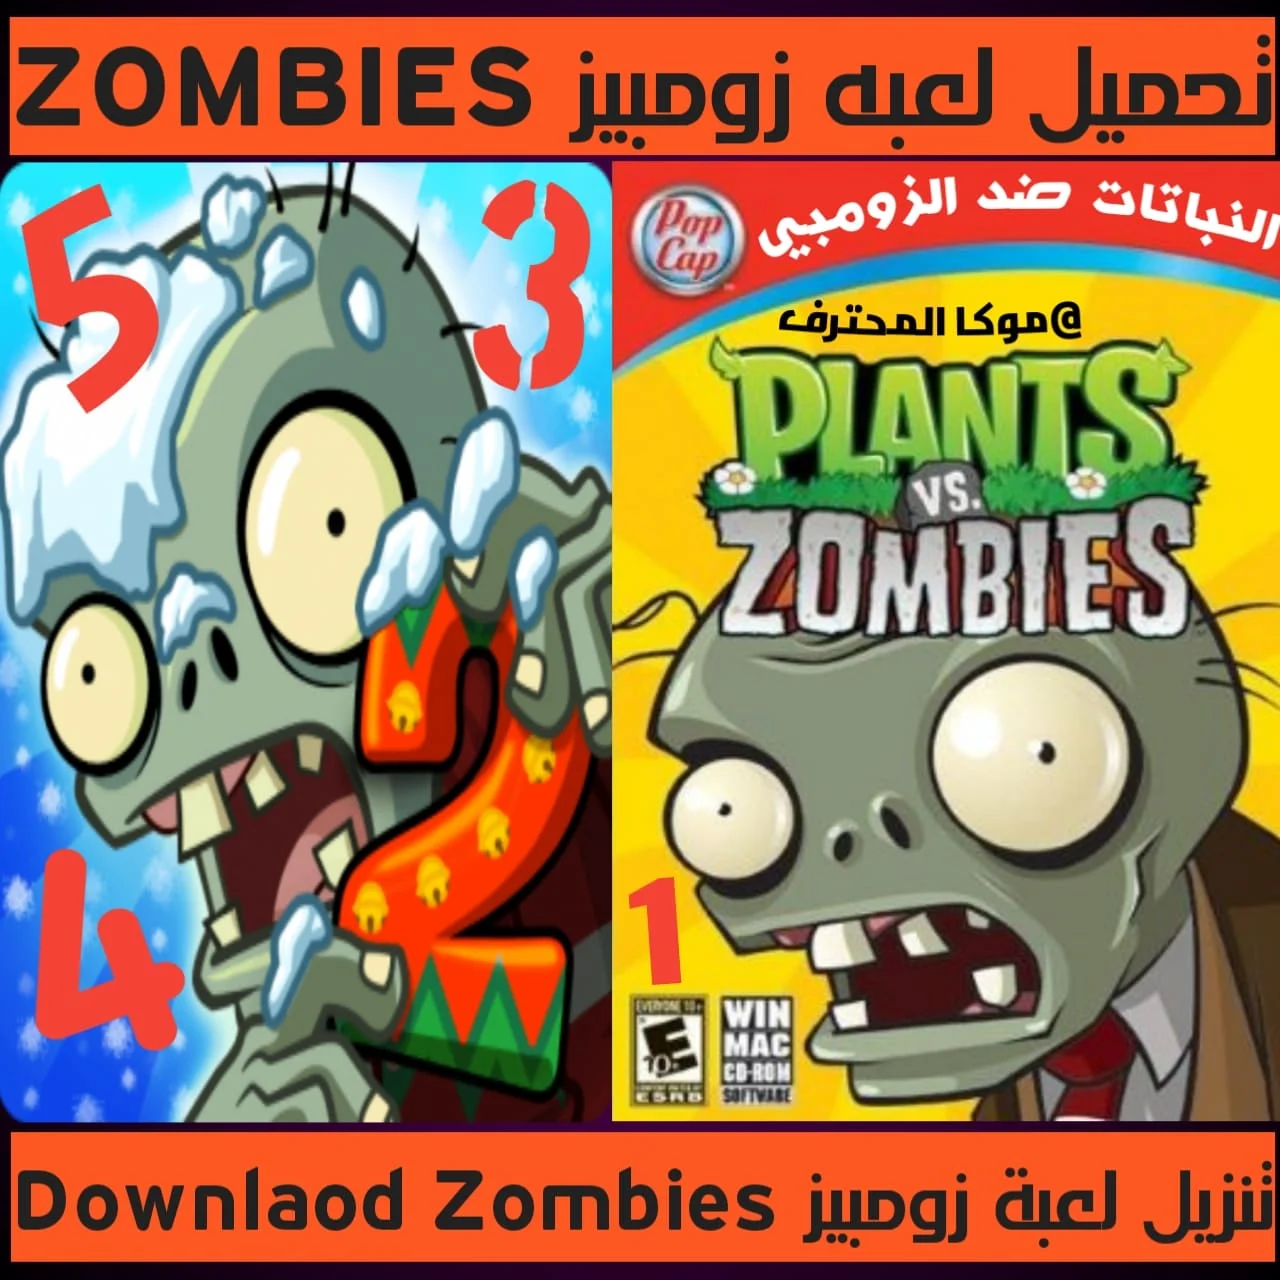 تحميل بلانتس فيرسيز زومبيي Download Zombies لعبة فيديو